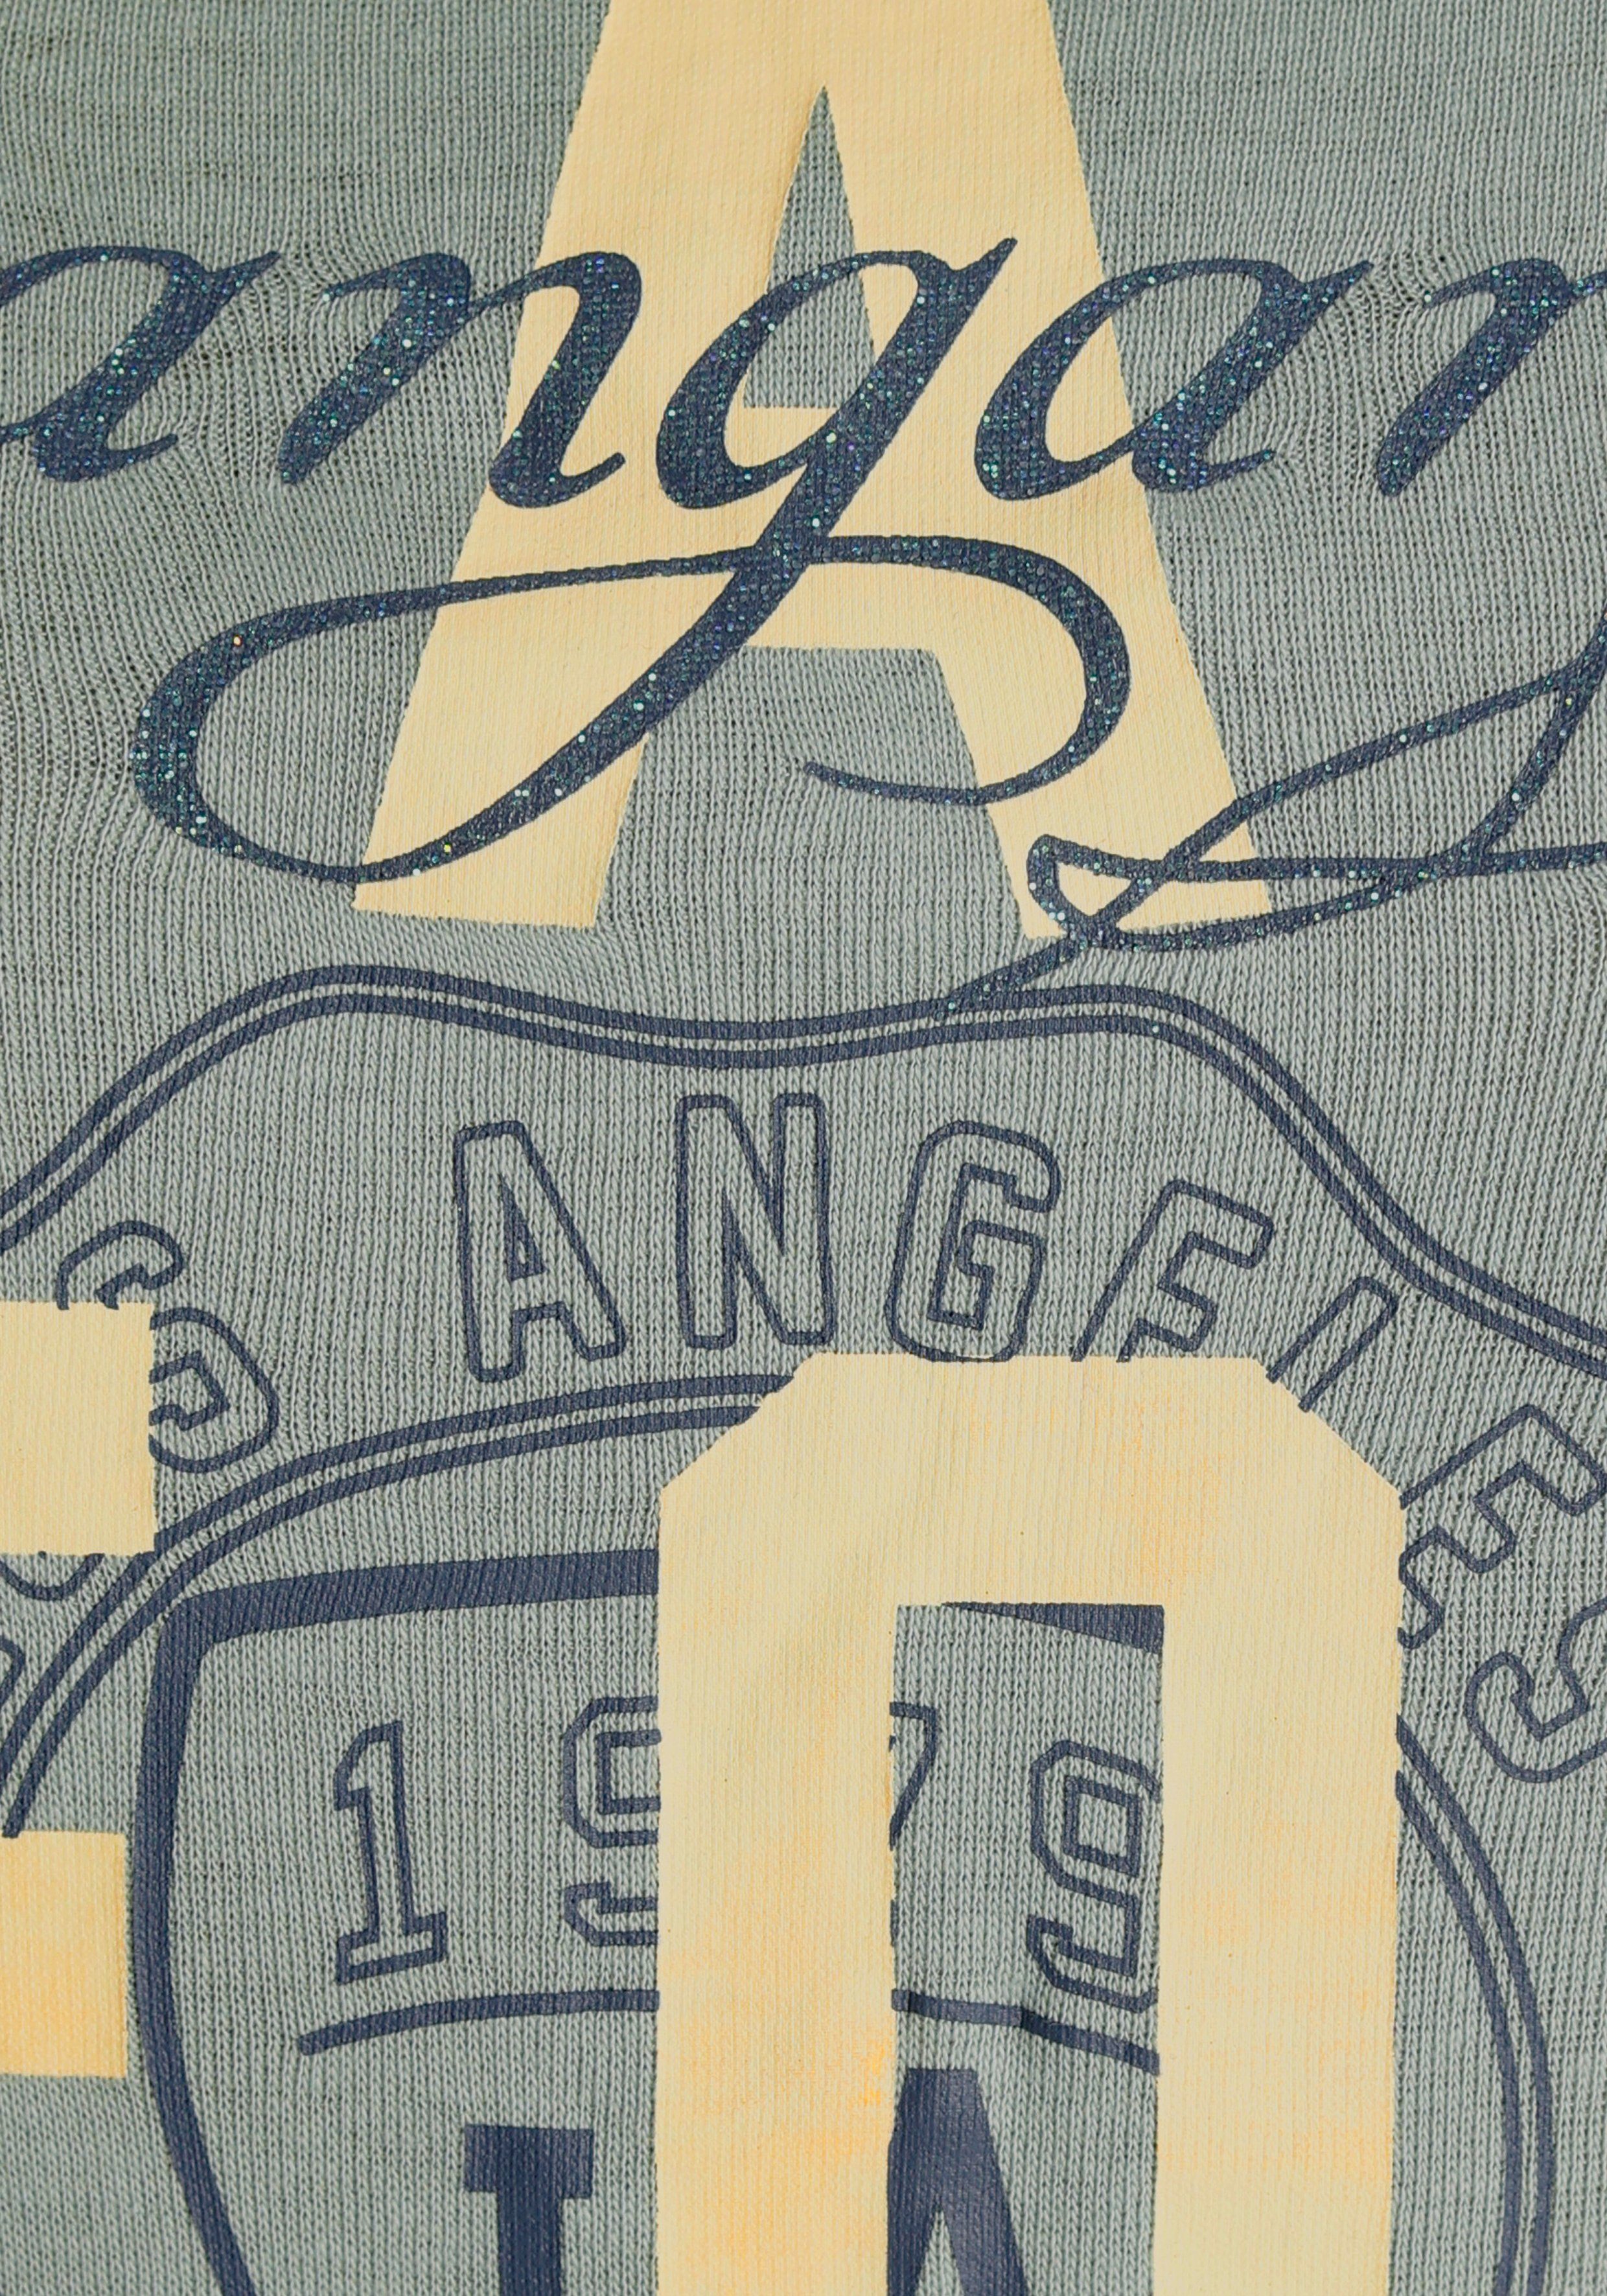 khakigrau - KOLLEKTION im NEUE Logodruck California-Style Print-Shirt KangaROOS mit